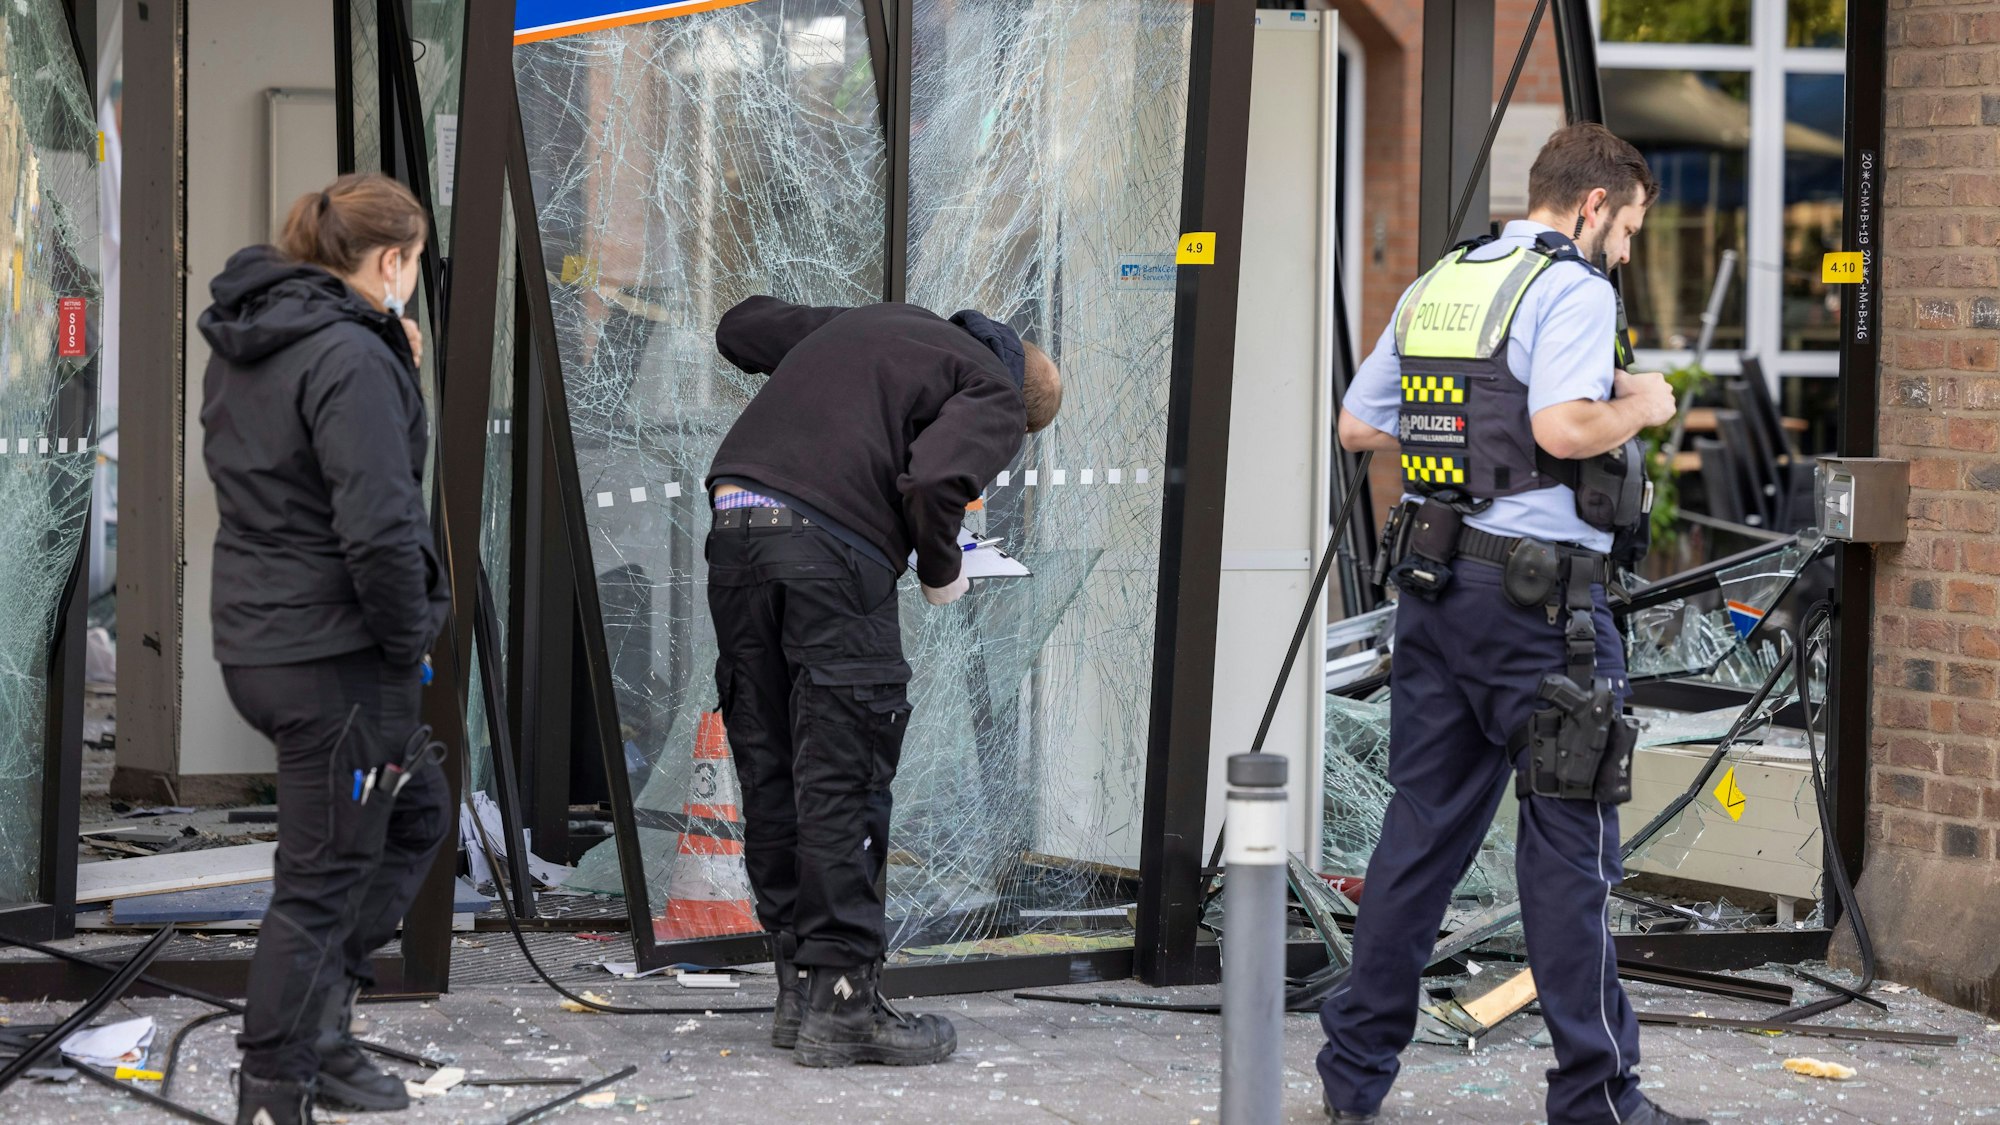 Einsatzkräfte der Polizei untersuchen den Eingang eine Bank, der nach einer Geldautomatensprengung zerstört wurde.